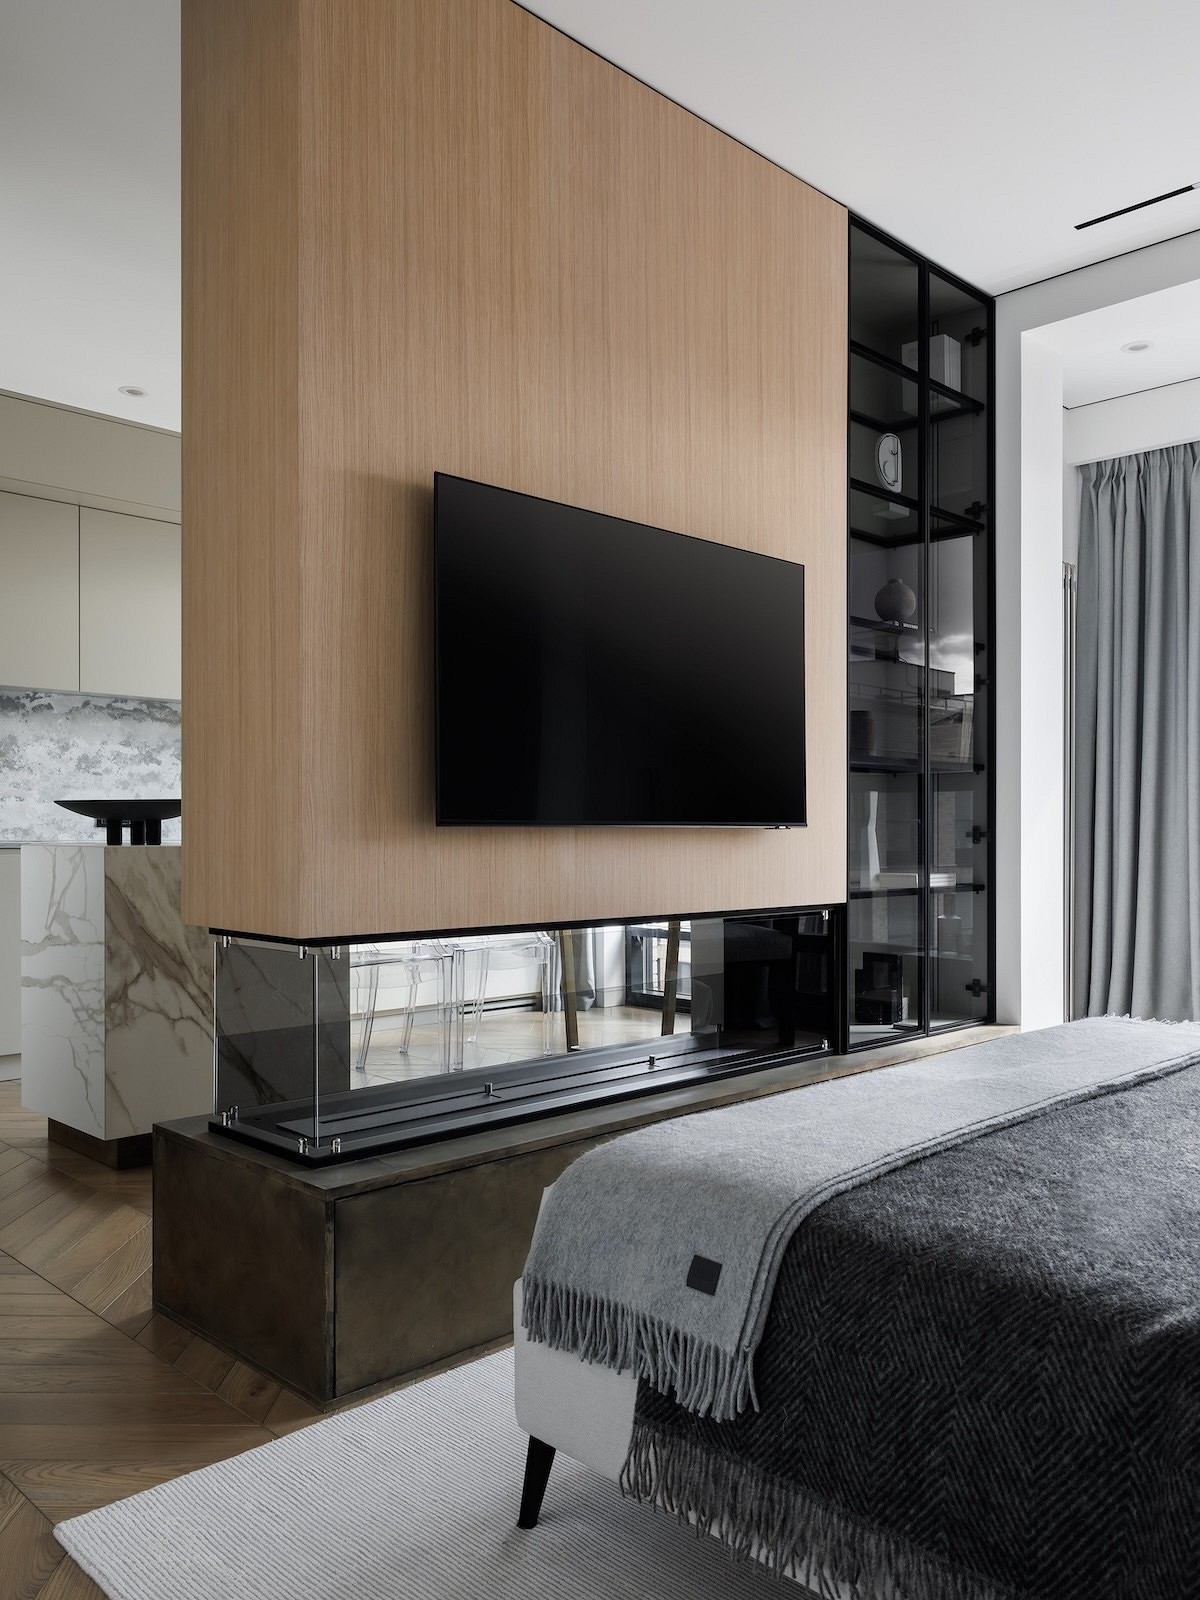 Как повесить телевизор в спальне? 7 стильных примеров от дизайнеров5